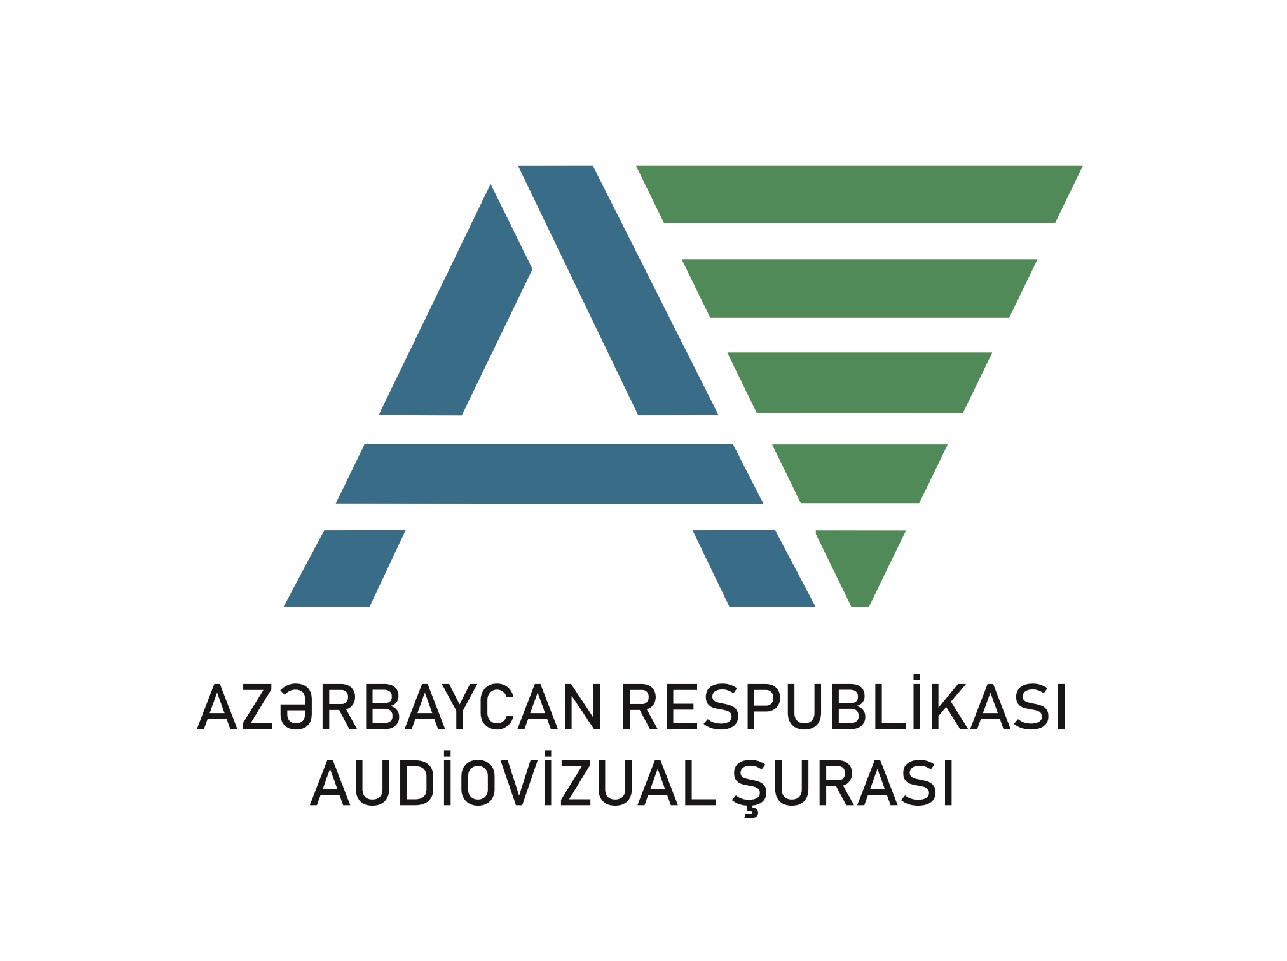 Azərbaycan Respublikası Milli Televiziya və Radio Şurasının 2018-ci il üzrə maliyyə hesabatı